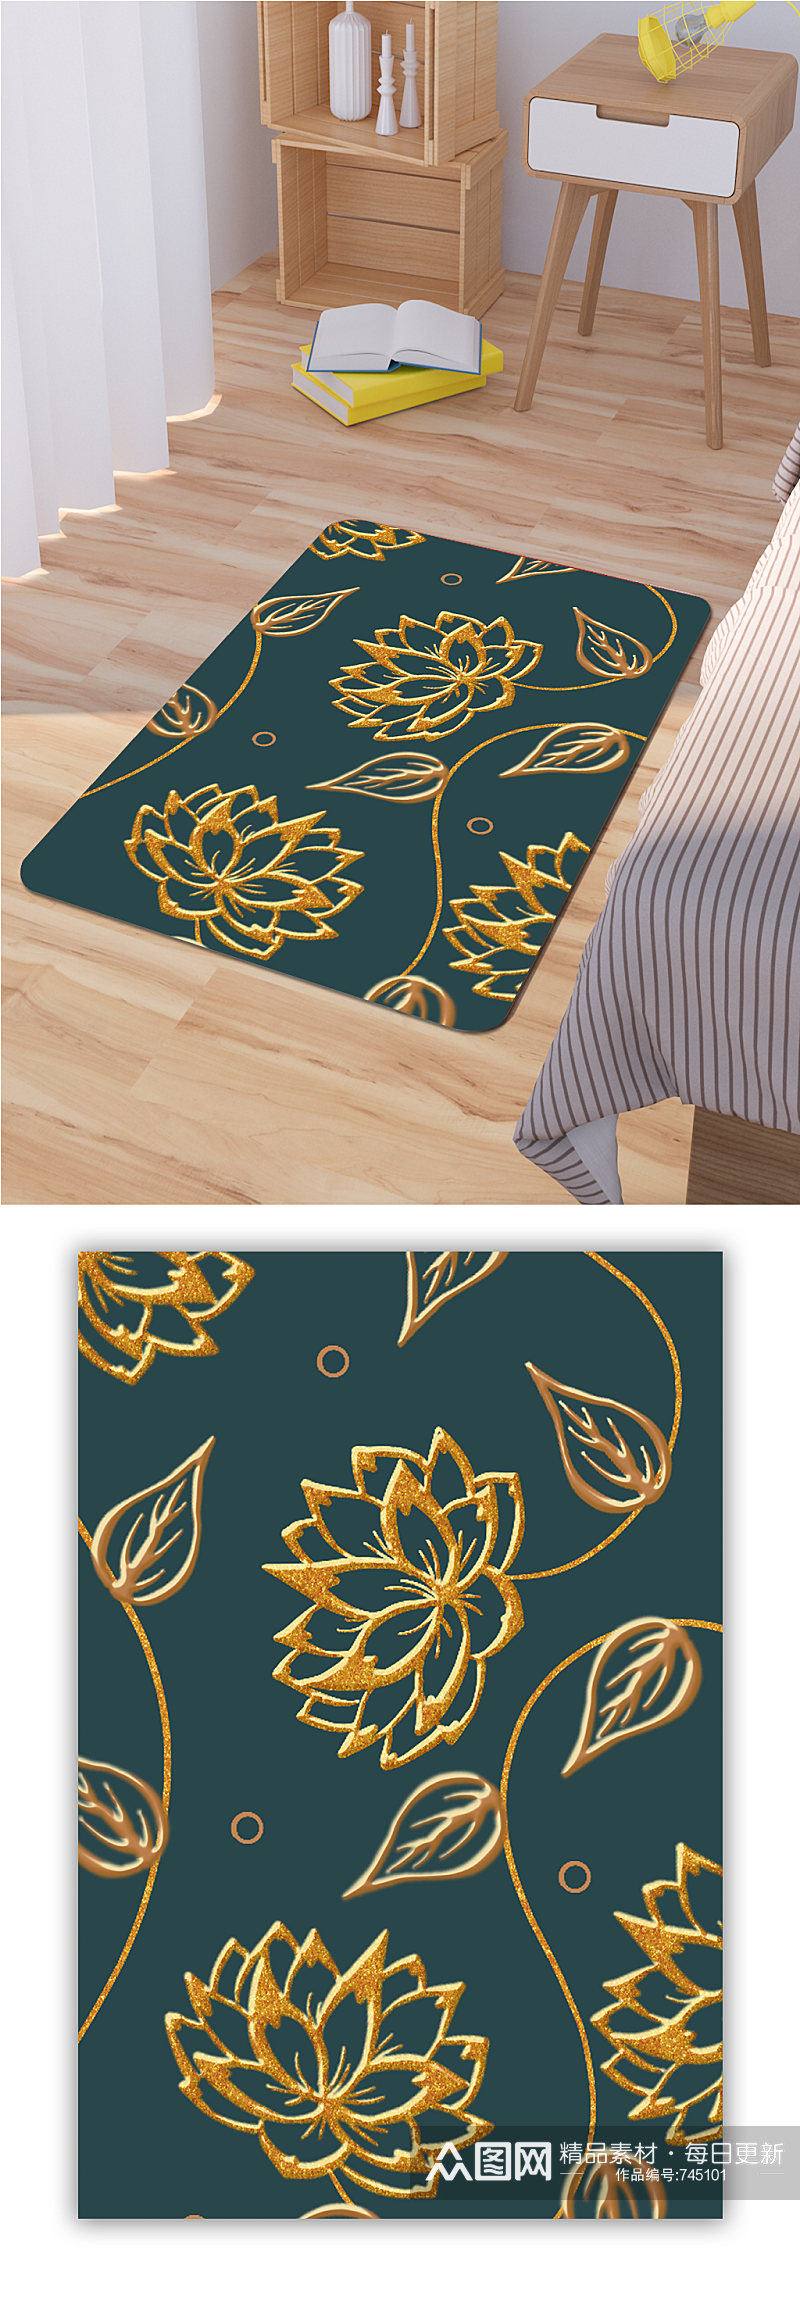 床边地毯植物叶子地毯素材